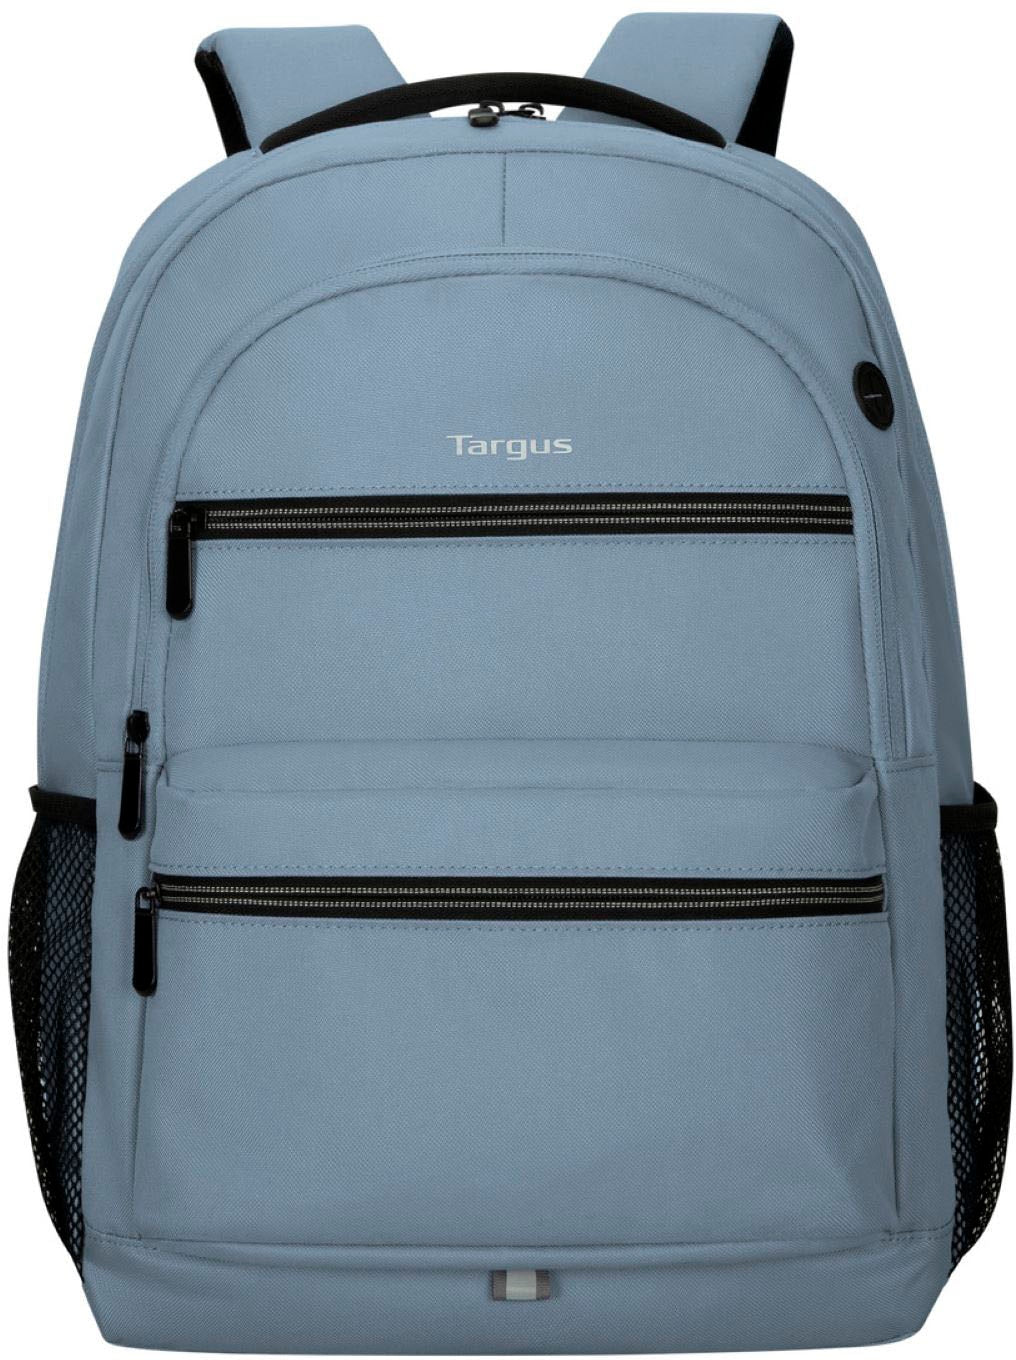 Targus - Octave II Backpack for 15.6” Laptops - Blue_0